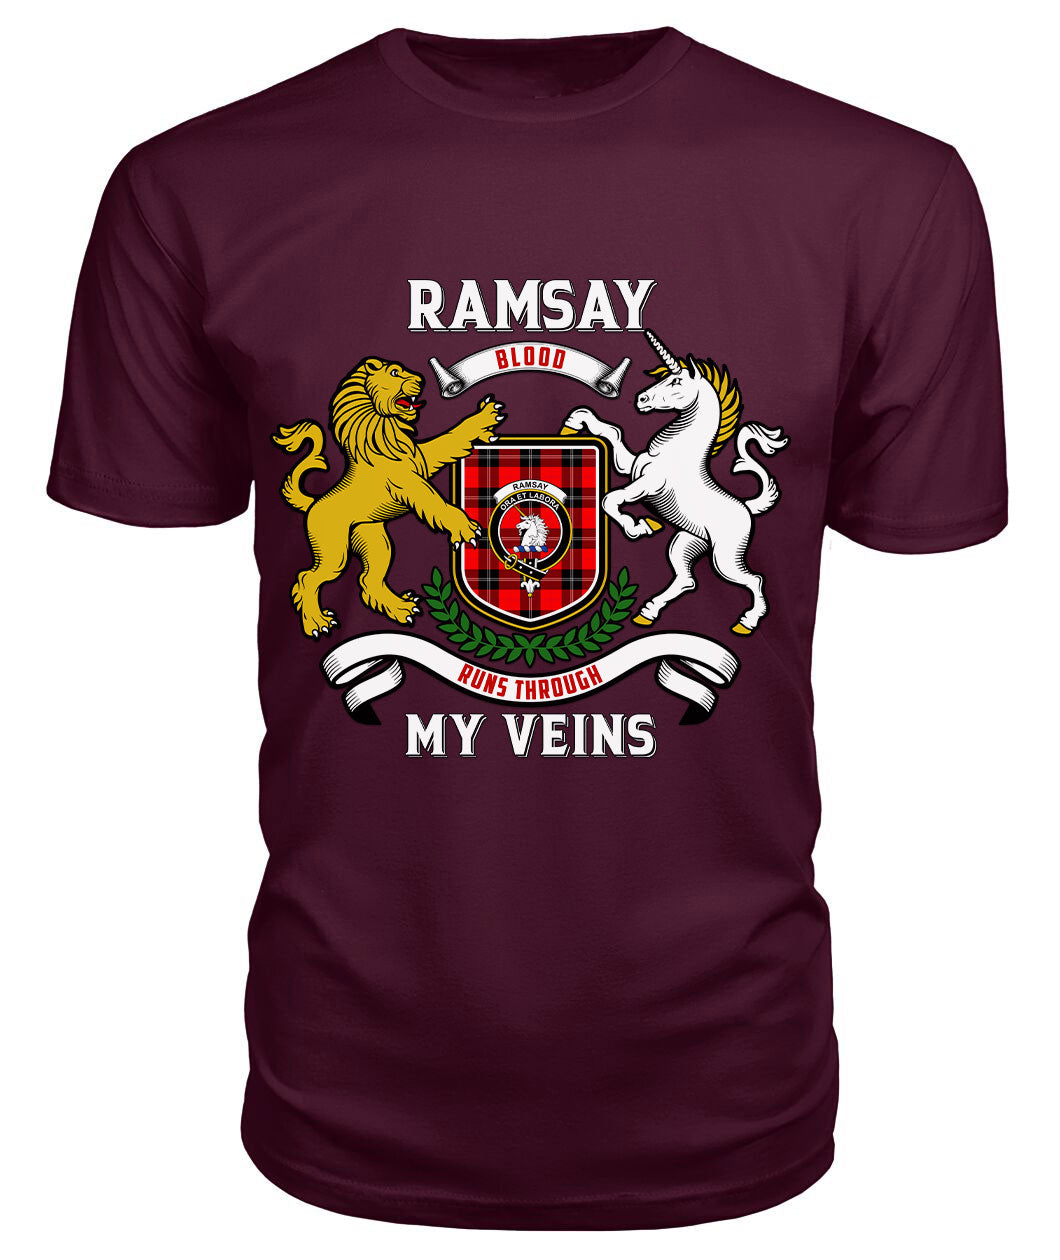 Ramsay Modern Tartan Crest 2D T-shirt - Blood Runs Through My Veins Style